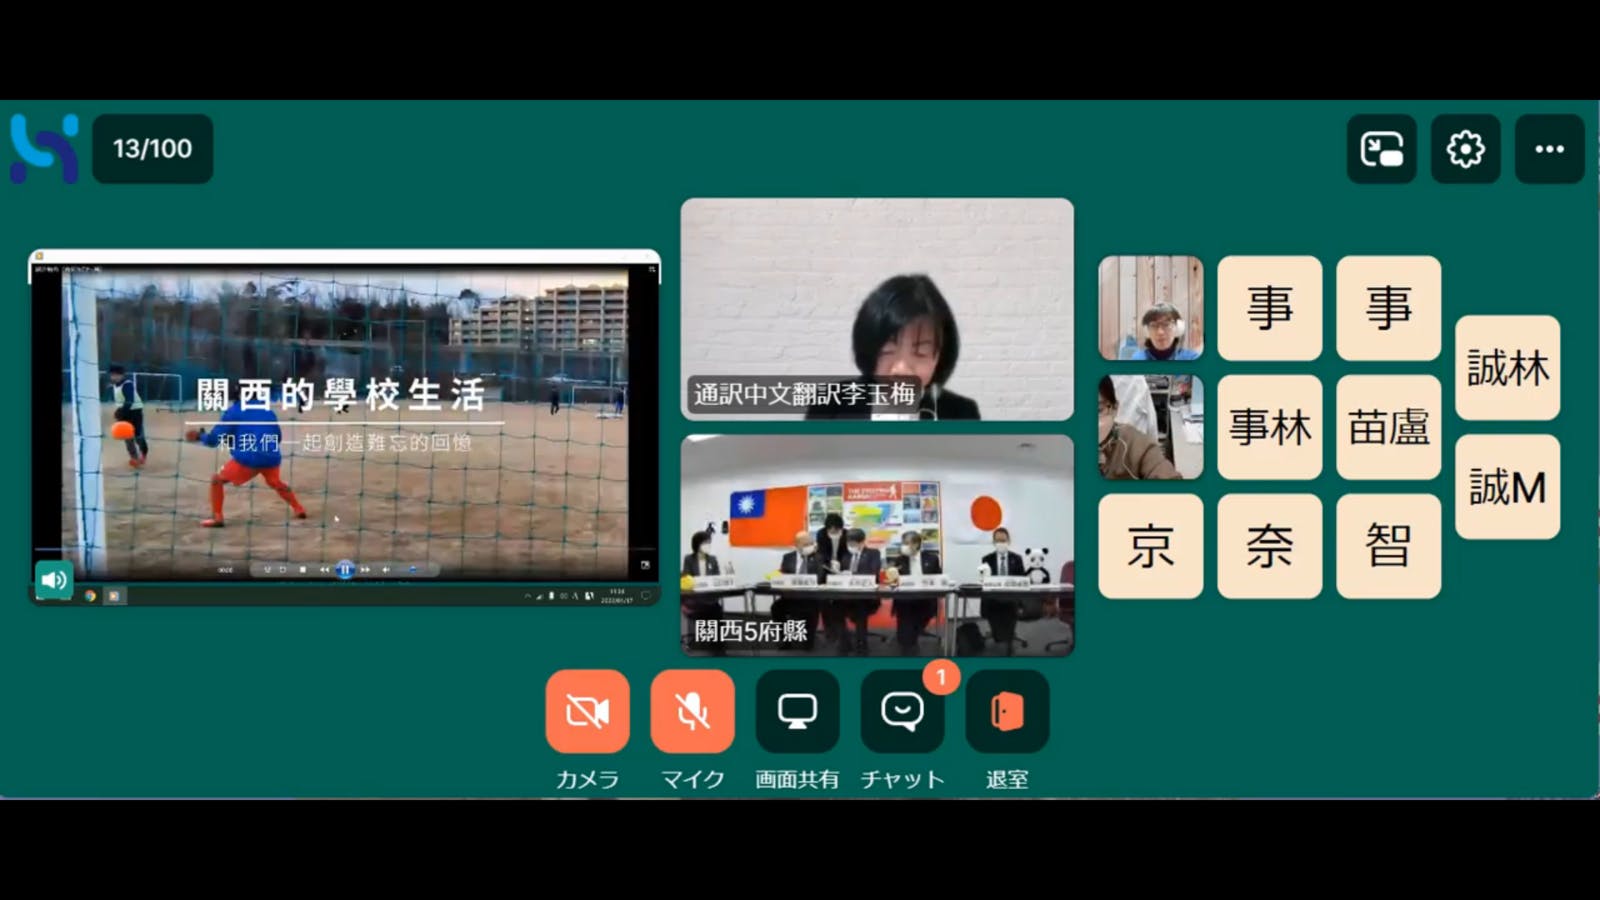 関西の学校生活を紹介するPR動画